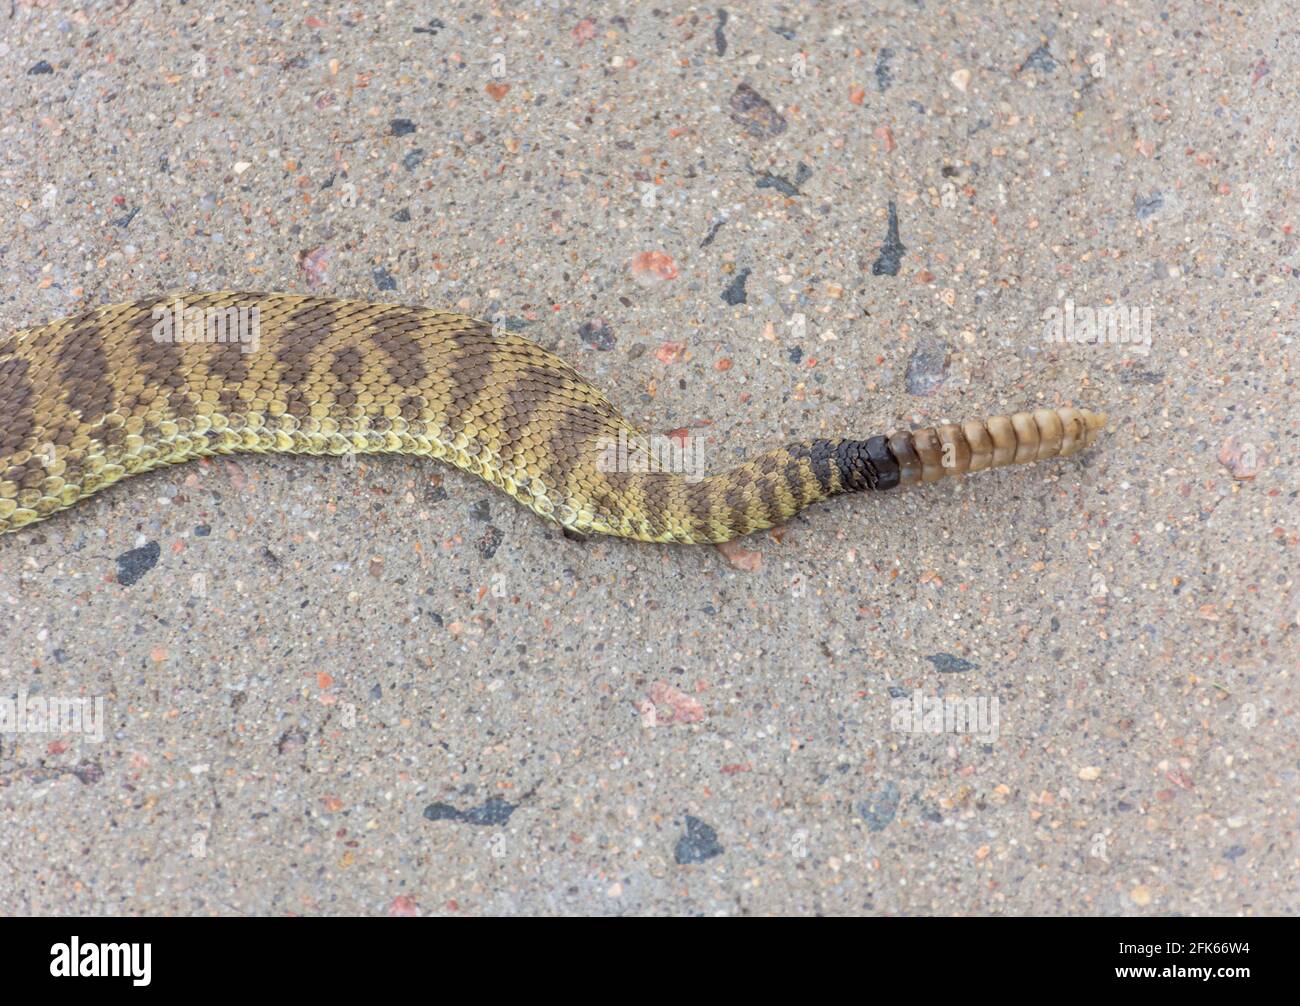 Nahaufnahme des Rattlesnake-Schwanzes (Crotalus viridis) mit Rassel, Schuppen und Färbung, Castle Rock Colorado USA. Foto aufgenommen im August. Stockfoto